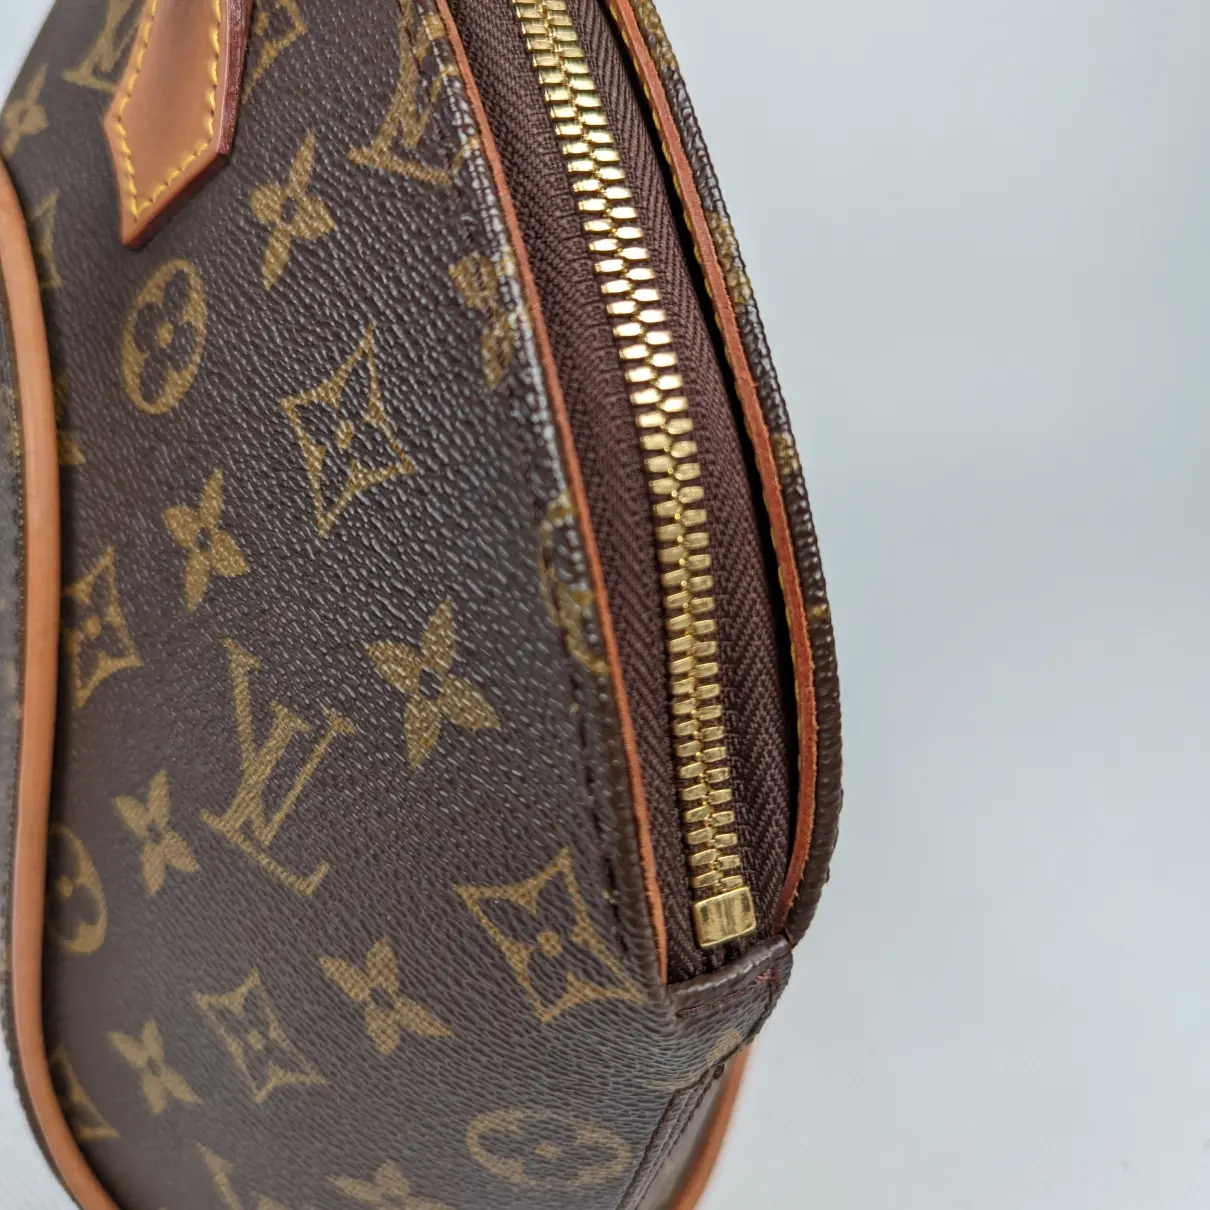 Ellipse leather handbag Louis Vuitton